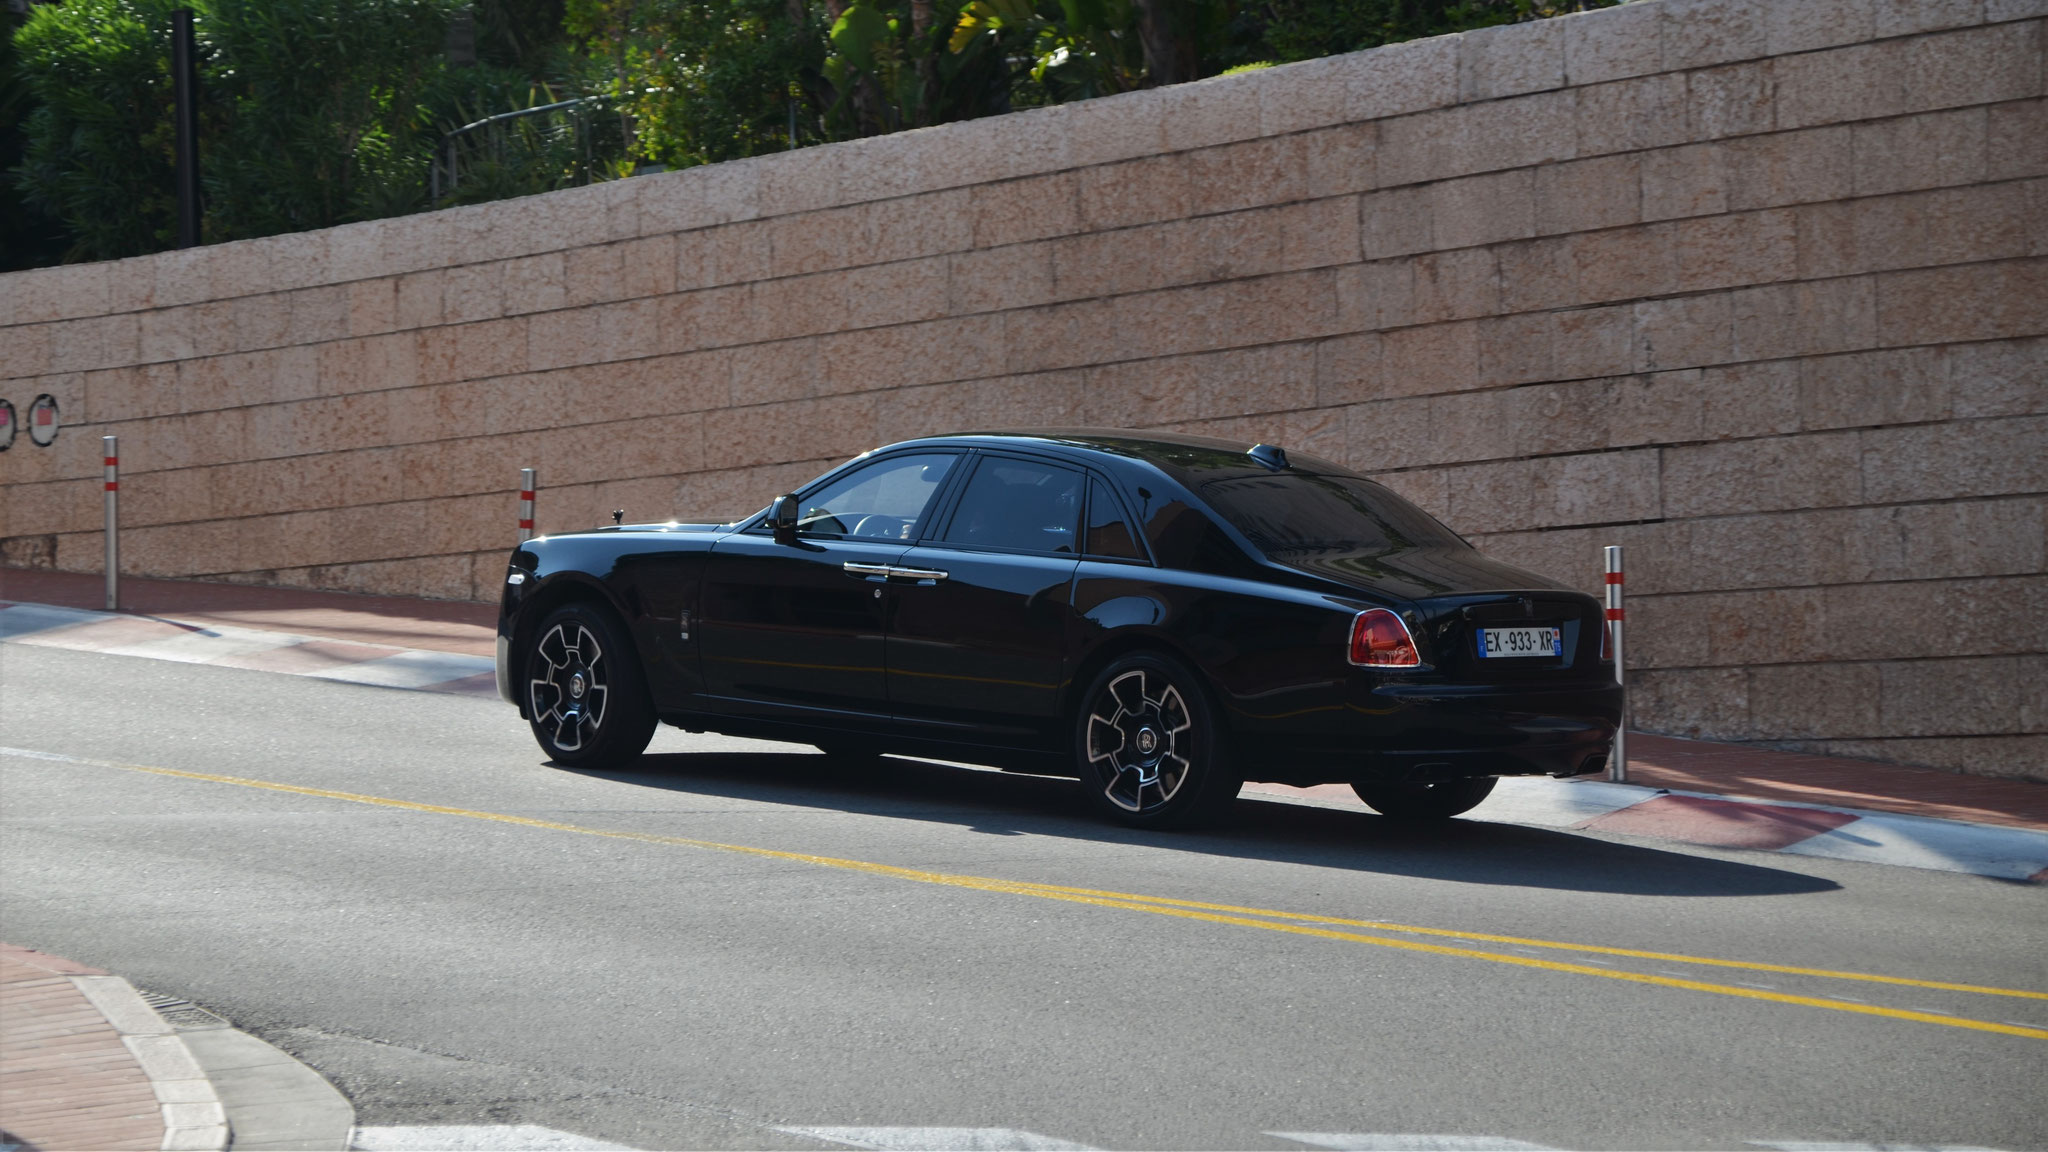 Rolls Royce Ghost Series II Black Badge - EX933XR-75 (FRA)